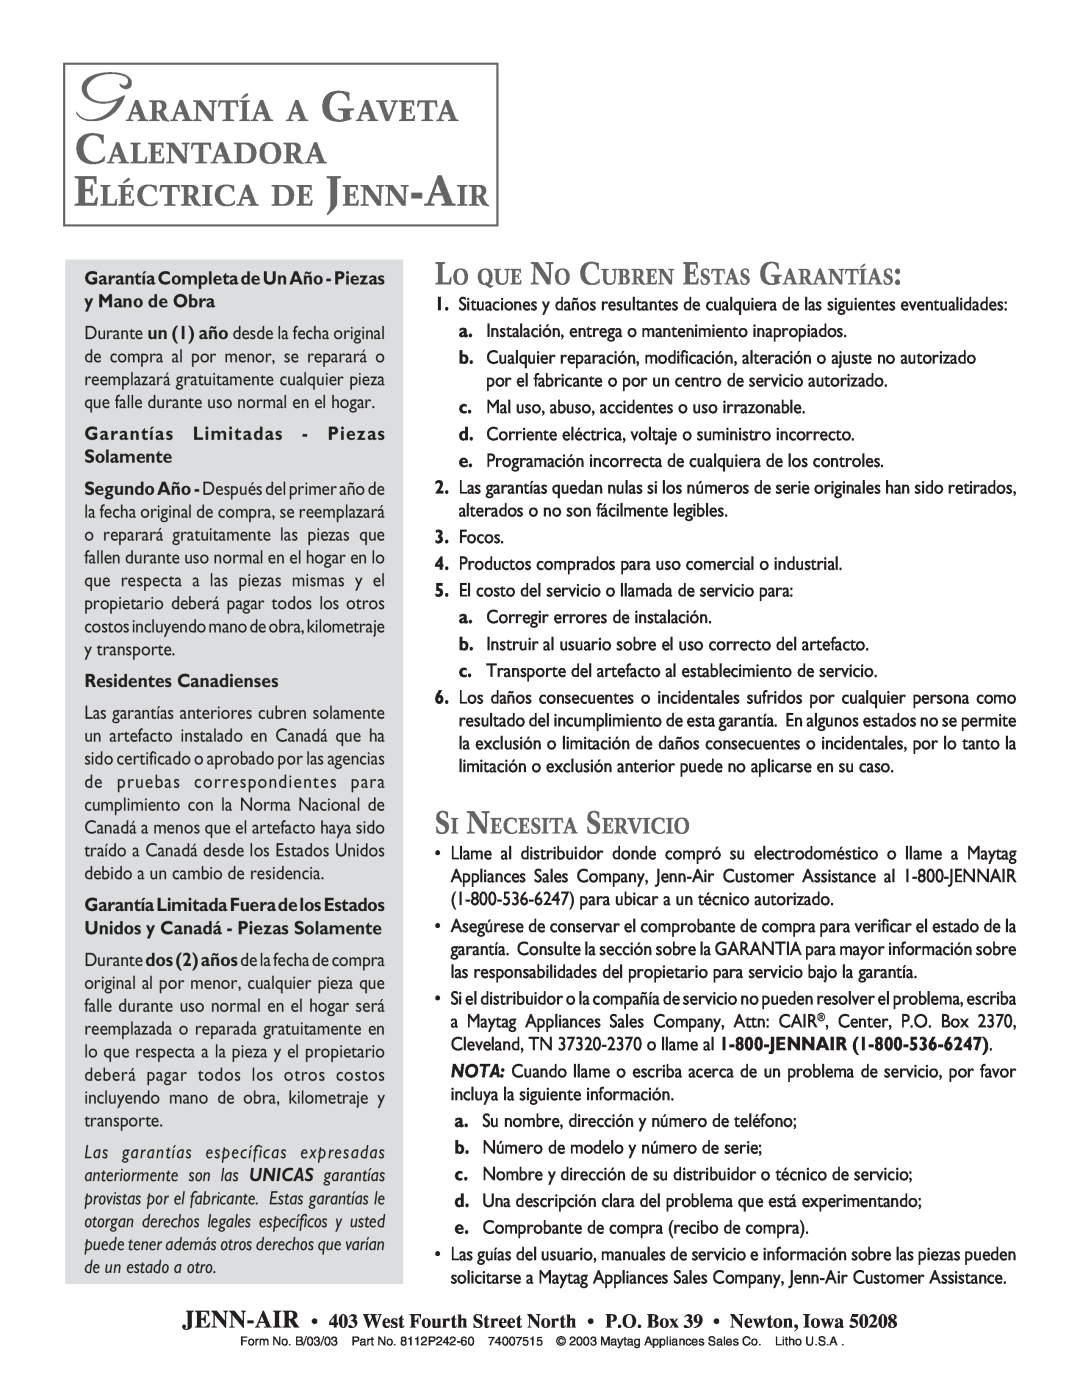 Jenn-Air ELECTRIC WARMING warranty Garantía A Gaveta Calentadora Eléctrica De Jenn-Air, Lo Que No Cubren Estas Garantías 